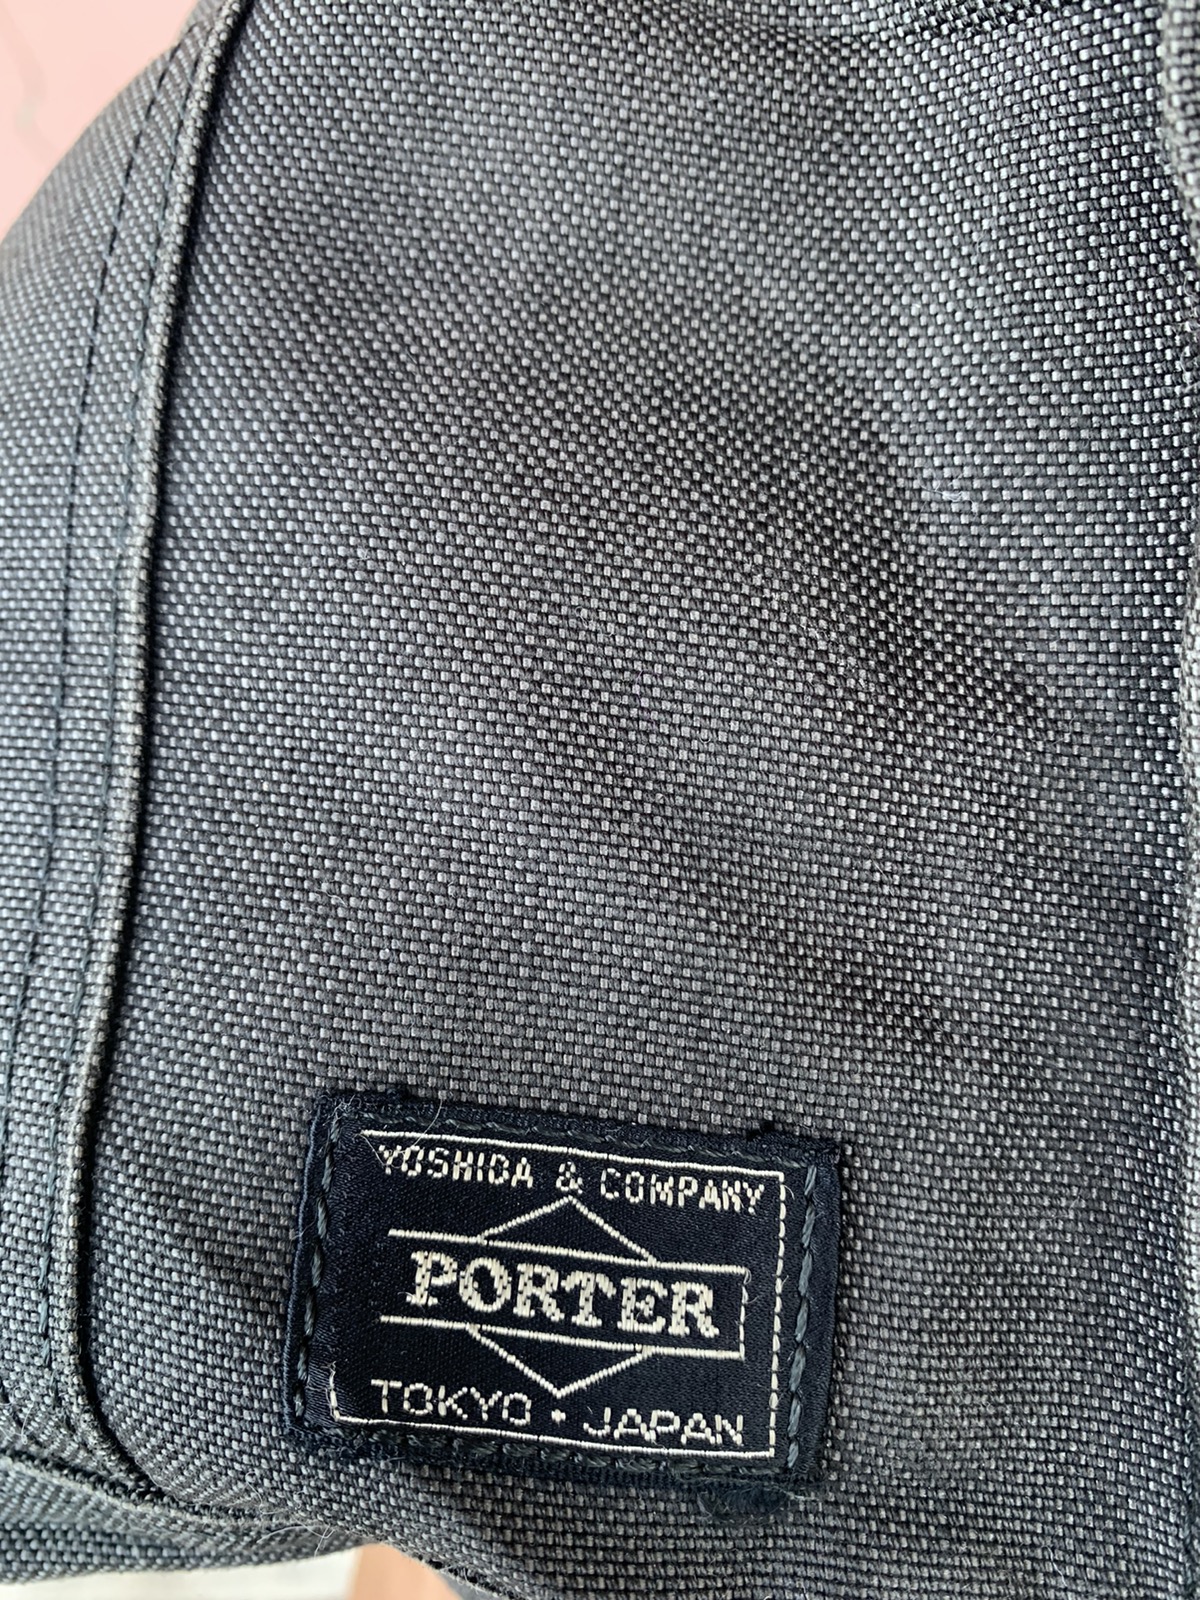 Vintage - Vintage porter tote bag nice design - 12